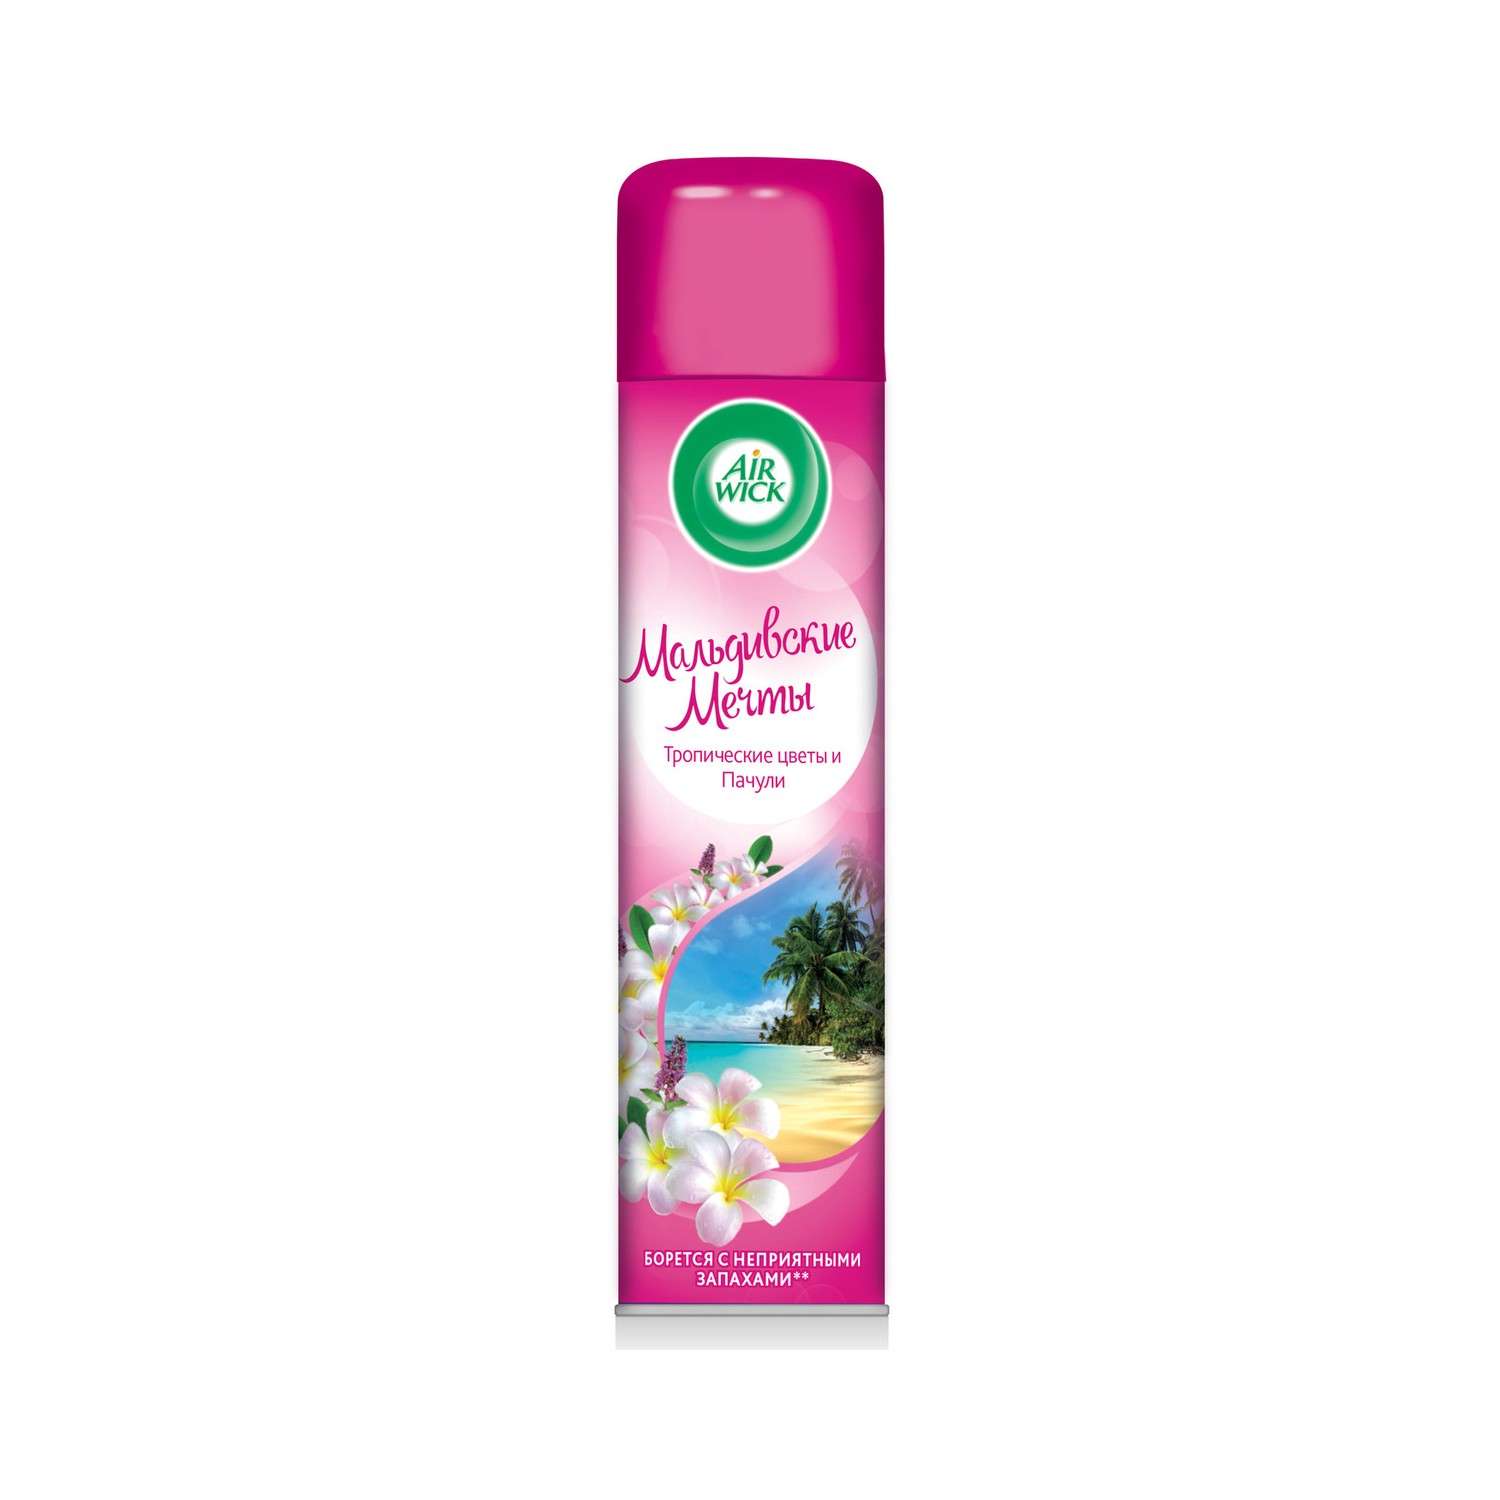 Освежитель воздуха Air Wick Мальдивские мечты Тропические цветы и Пачули 290мл - фото 1